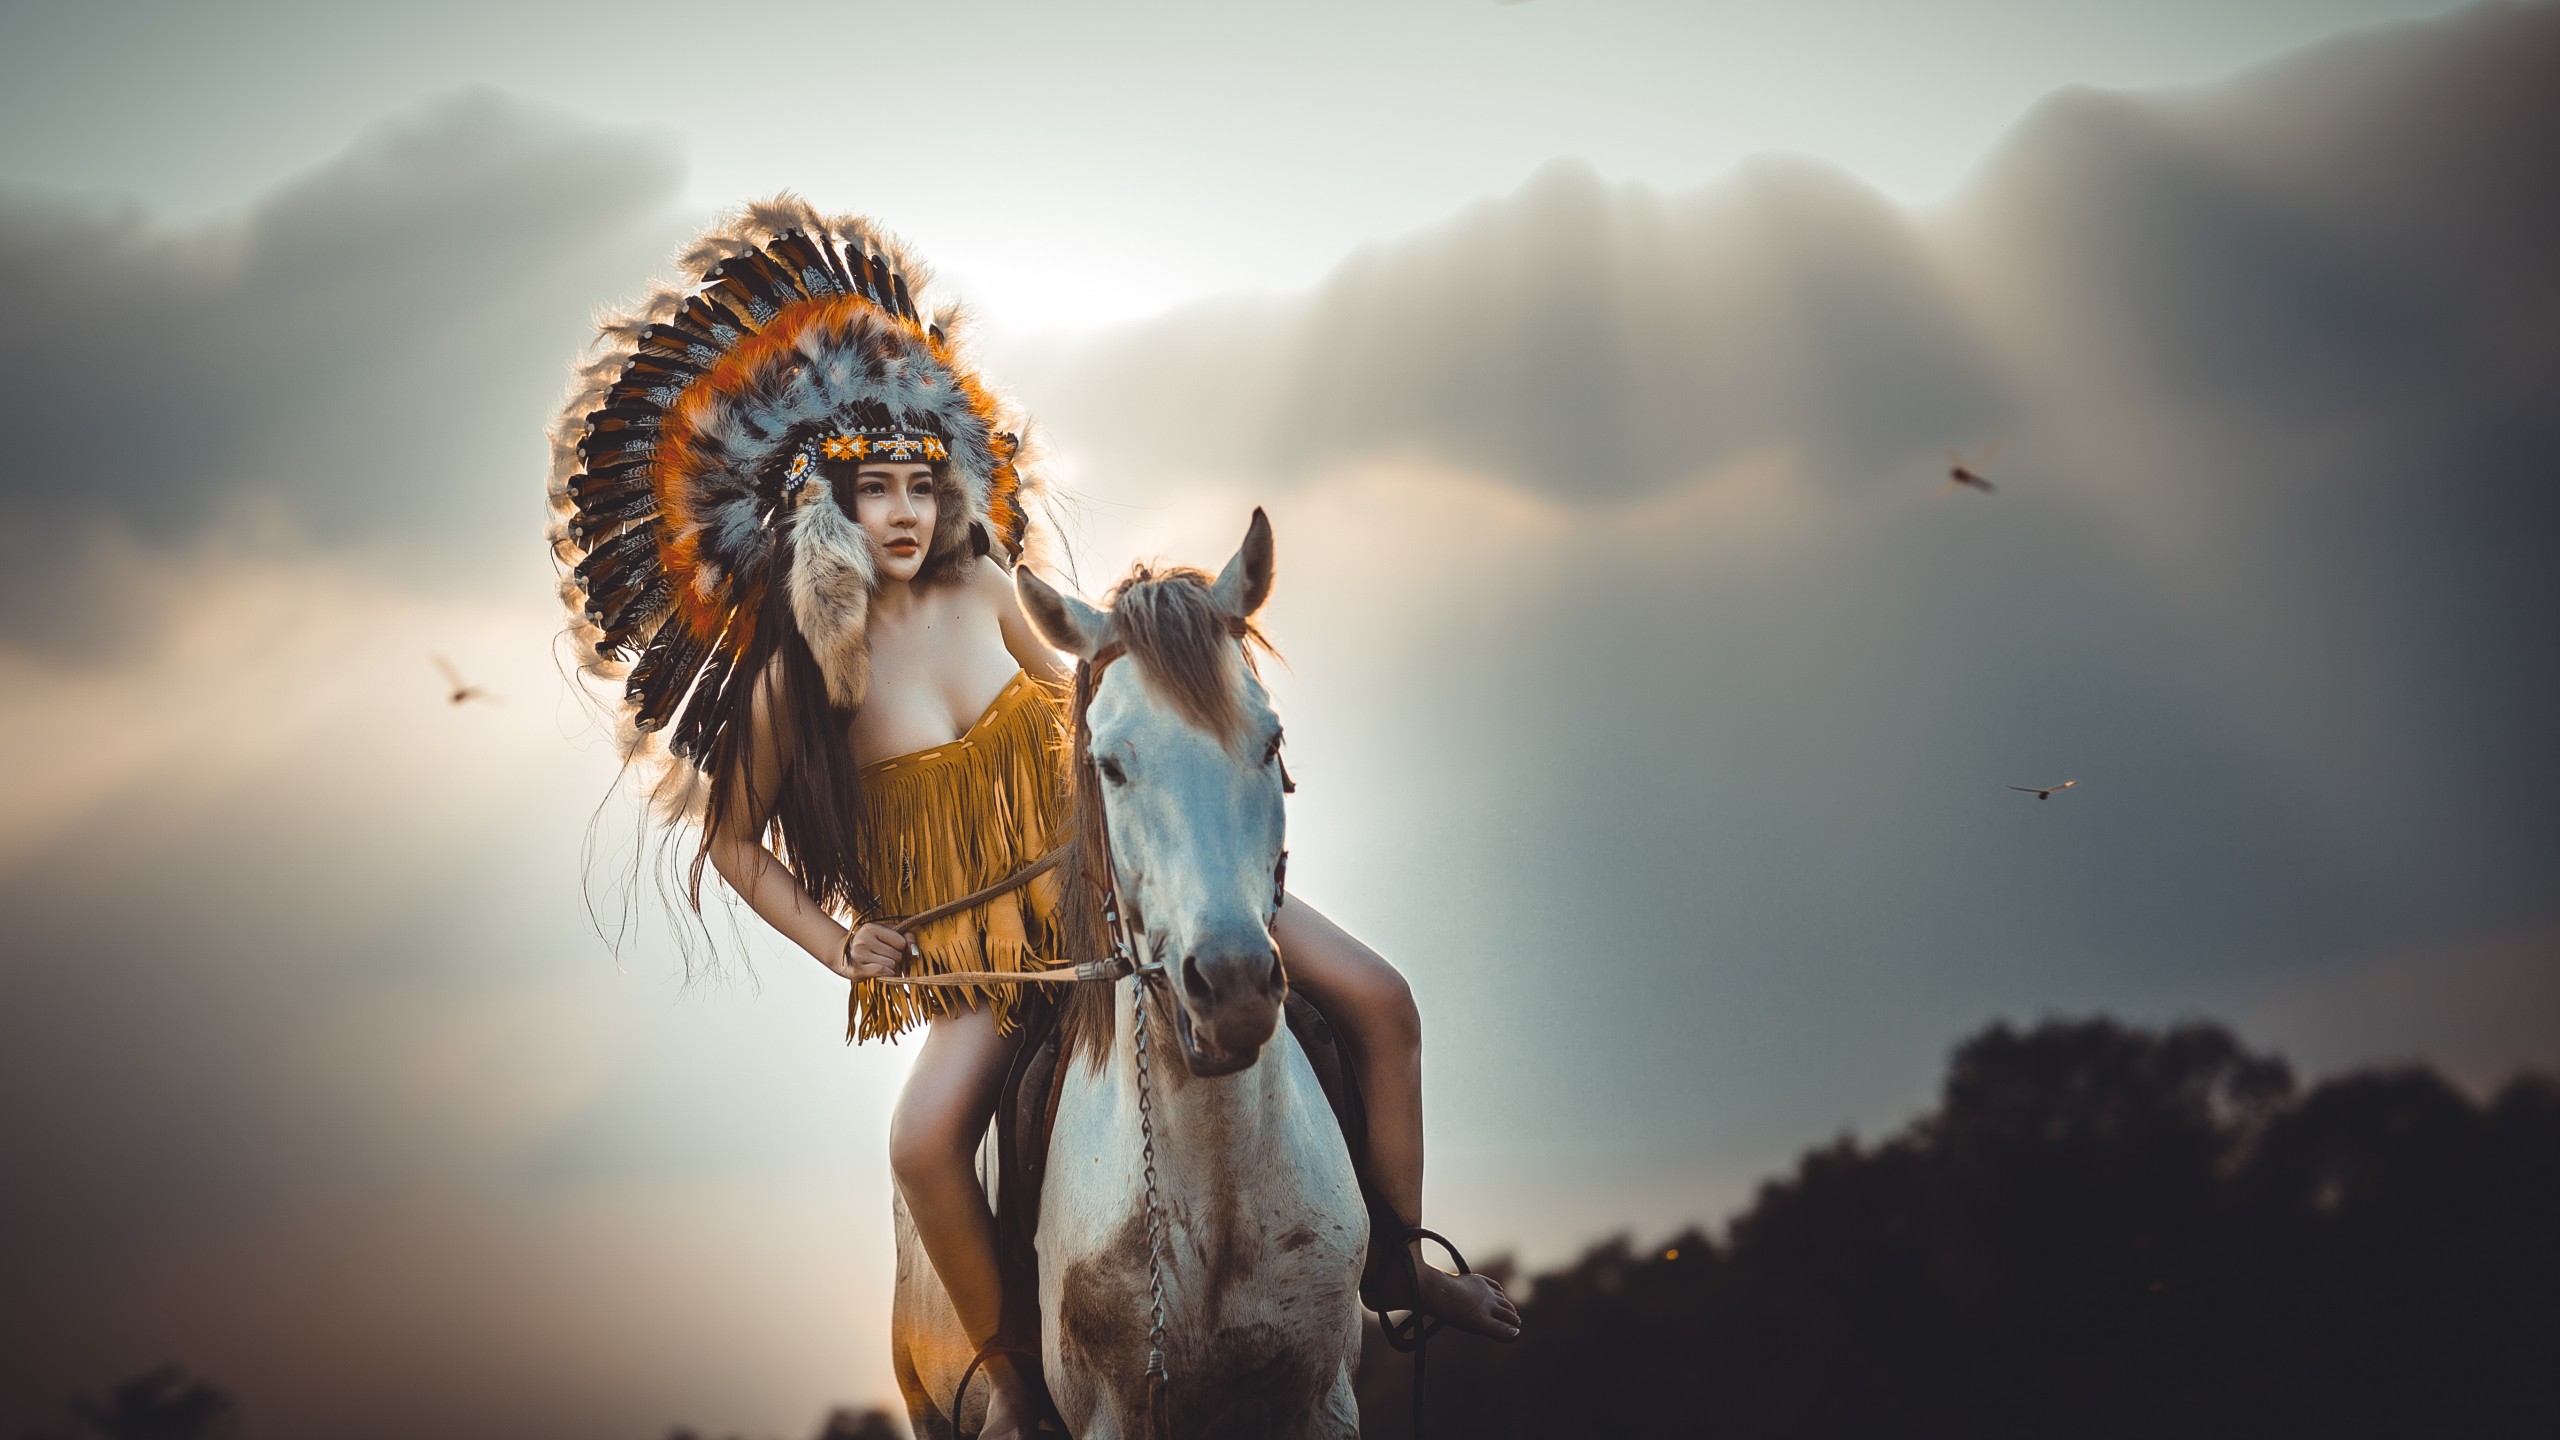 sfondi hd nativi americani,cielo,mitologia,fotografia,divertimento,cg artwork